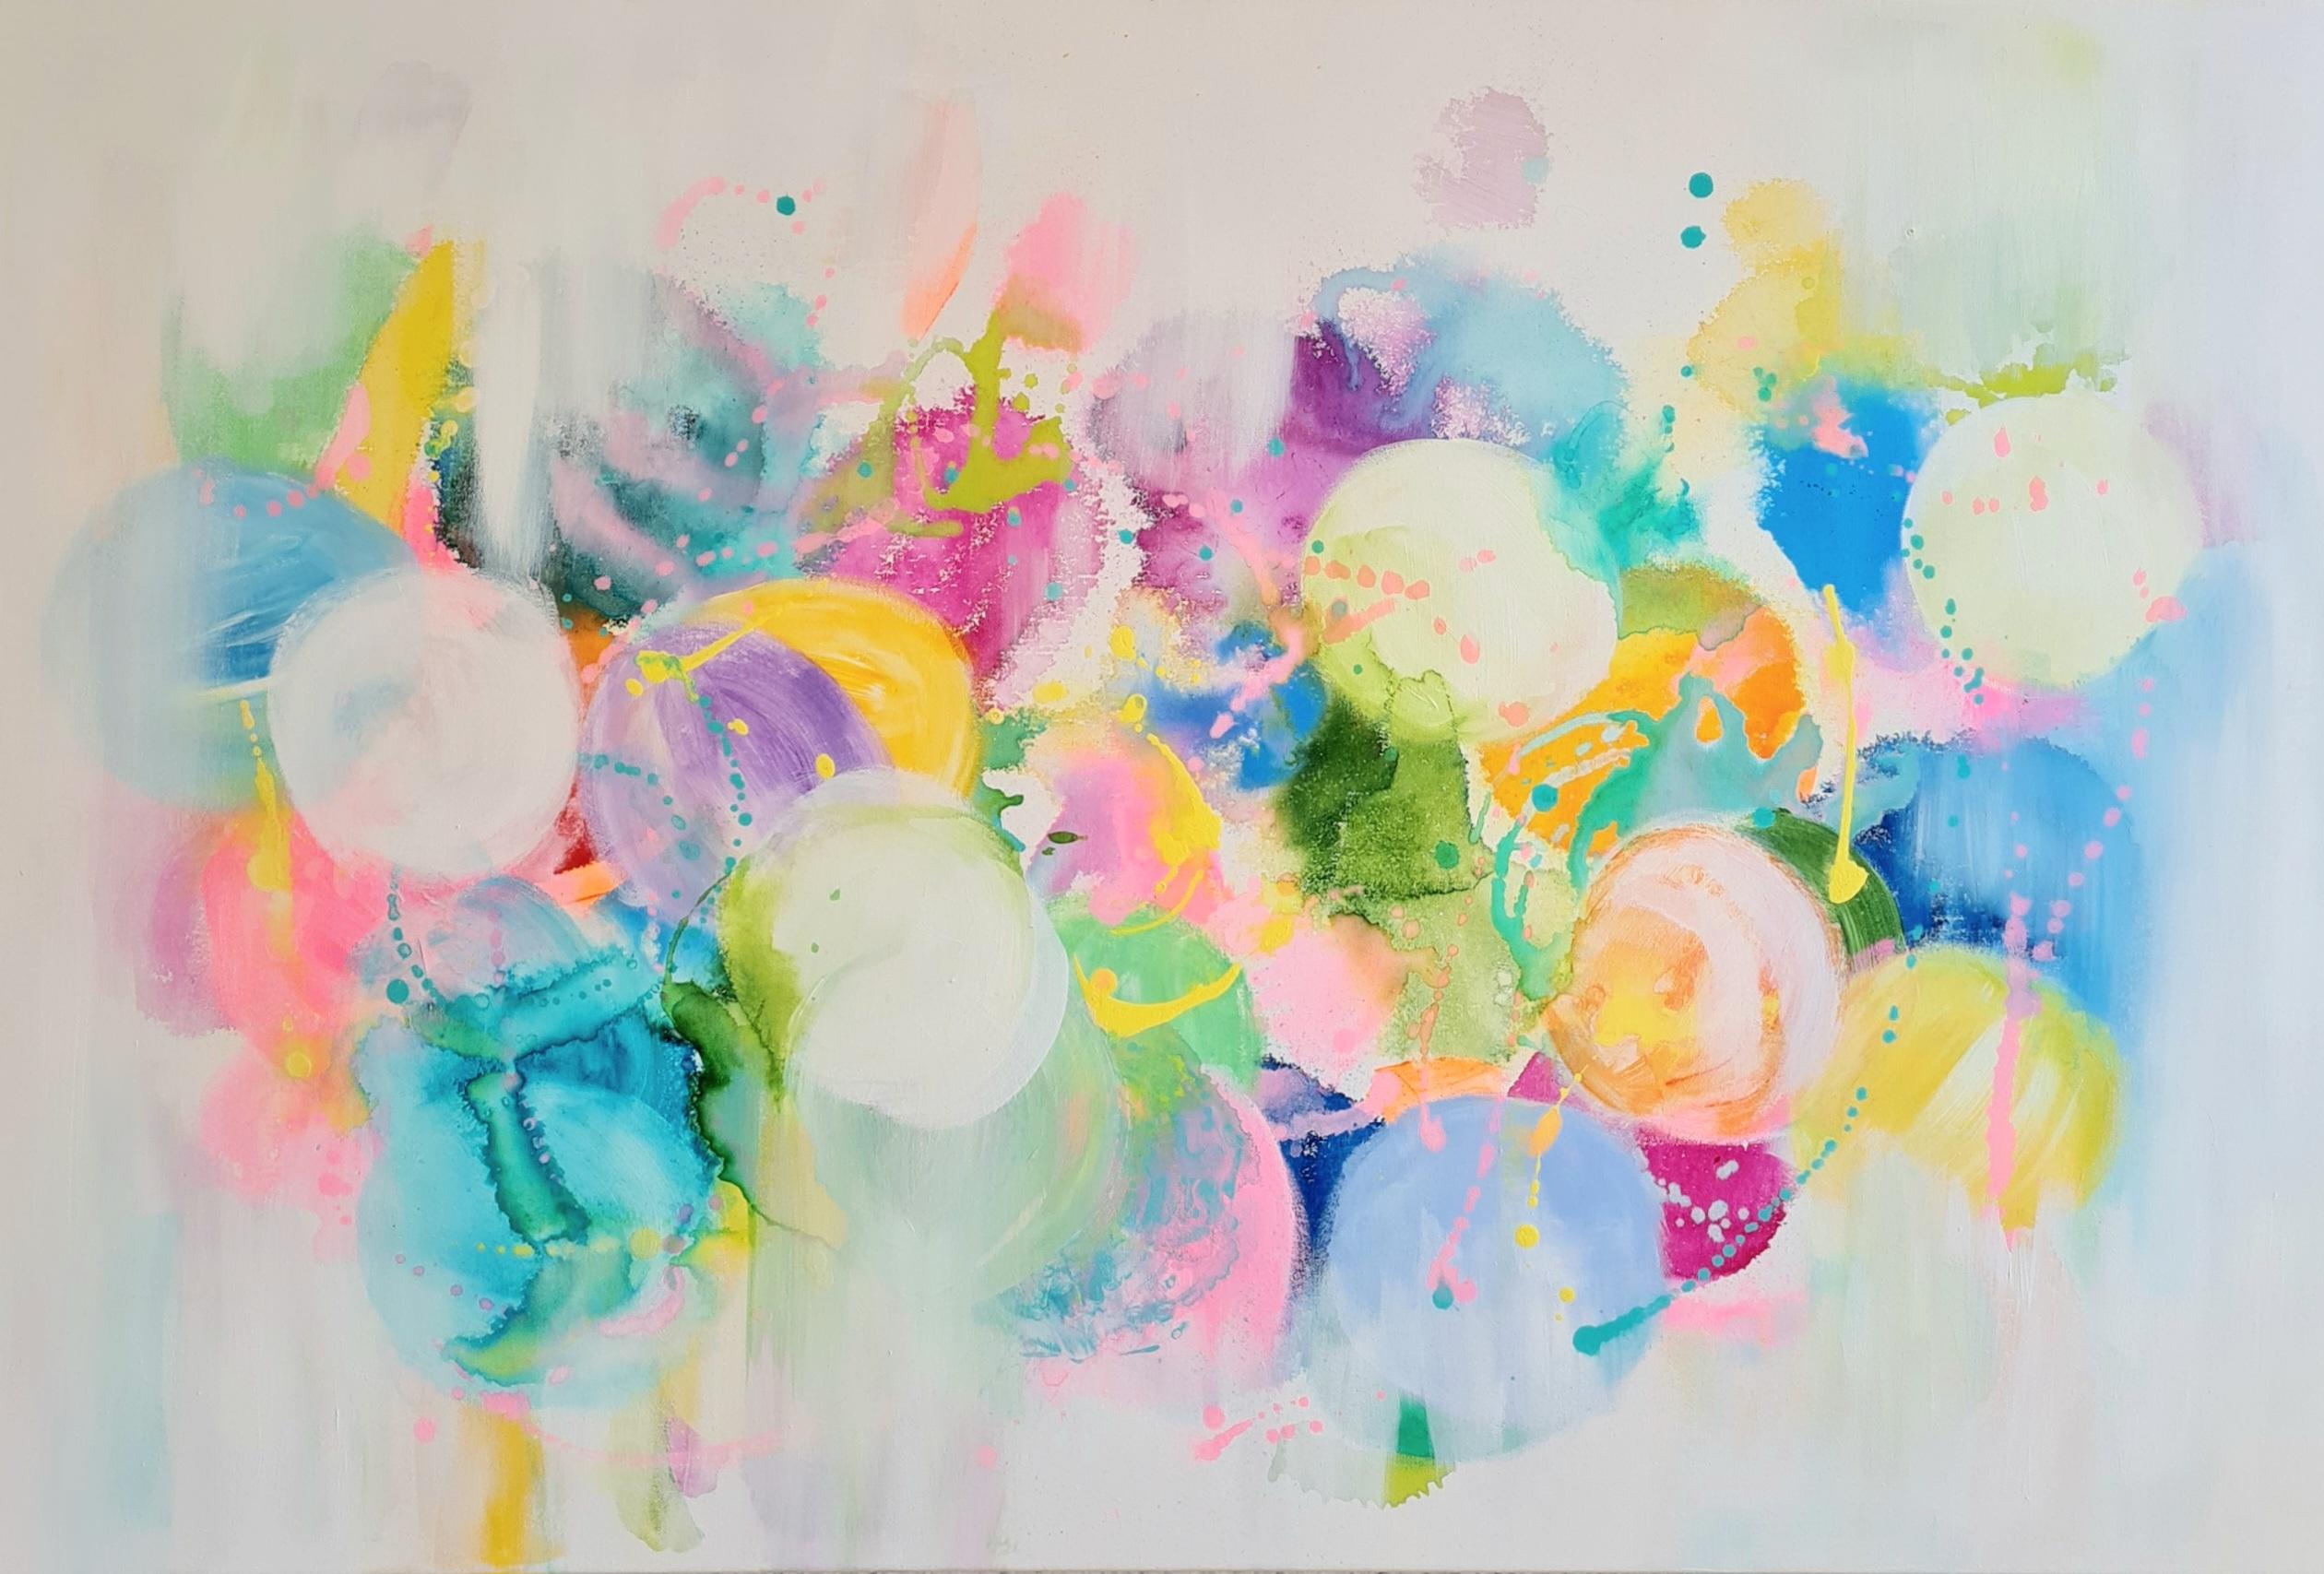 Abstract Painting Wioletta Gancarz - Make A Wish, peinture abstraite vibrante, œuvre d'art contemporaine colorée